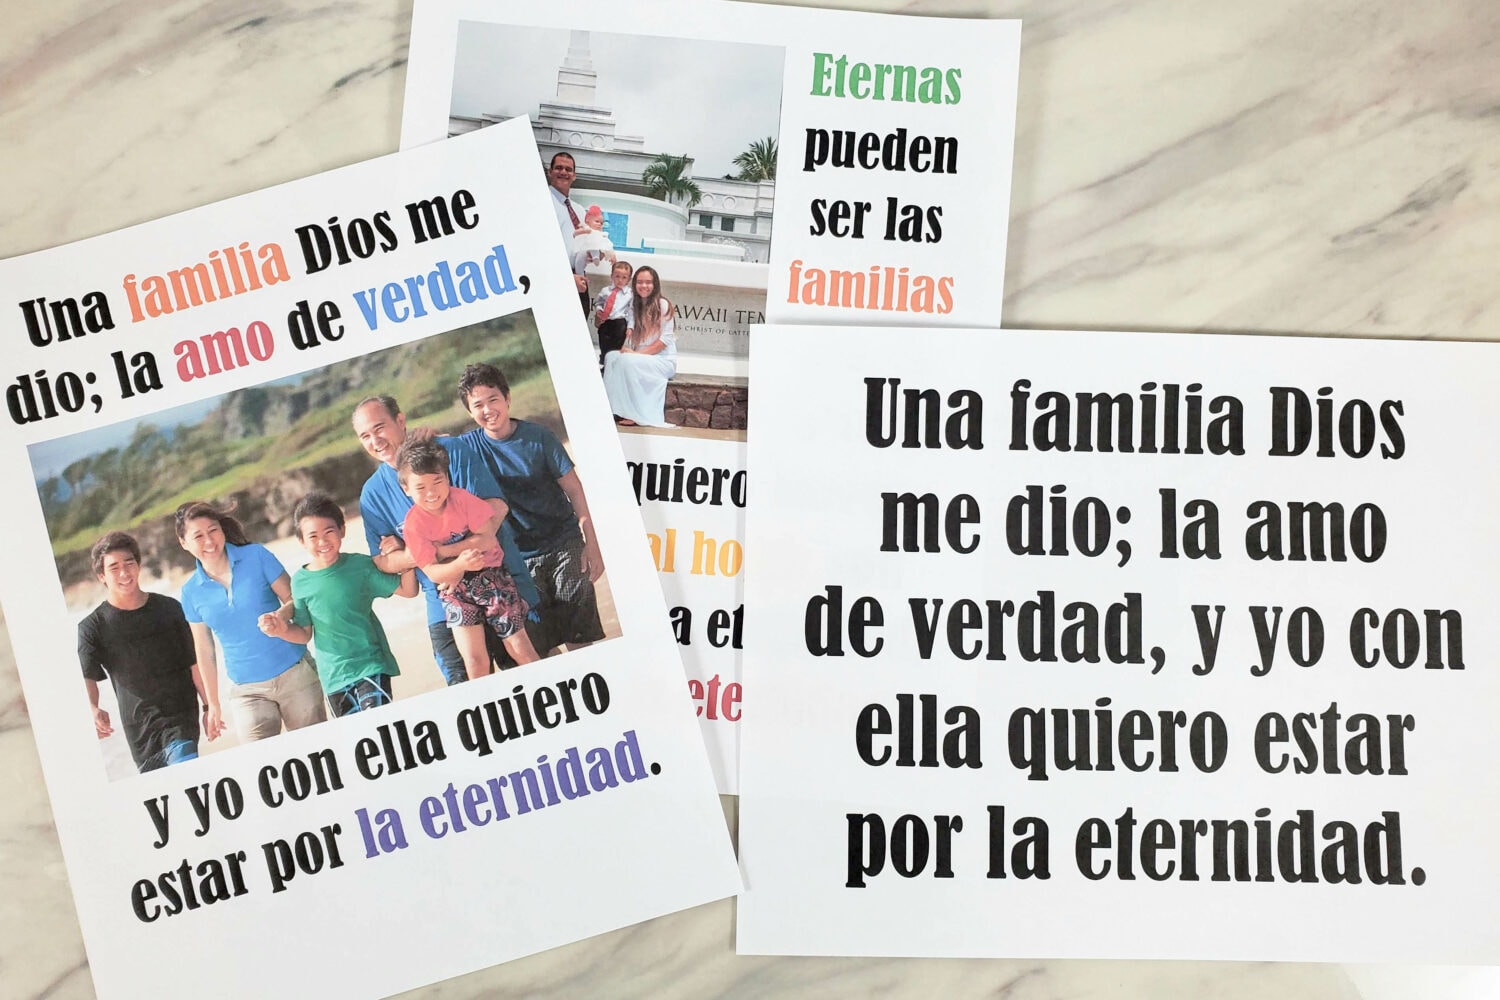 Las familias pueden ser eternas rotafolia y letras #SUD #Tiempodecantar #Liderdemusica #Primaria